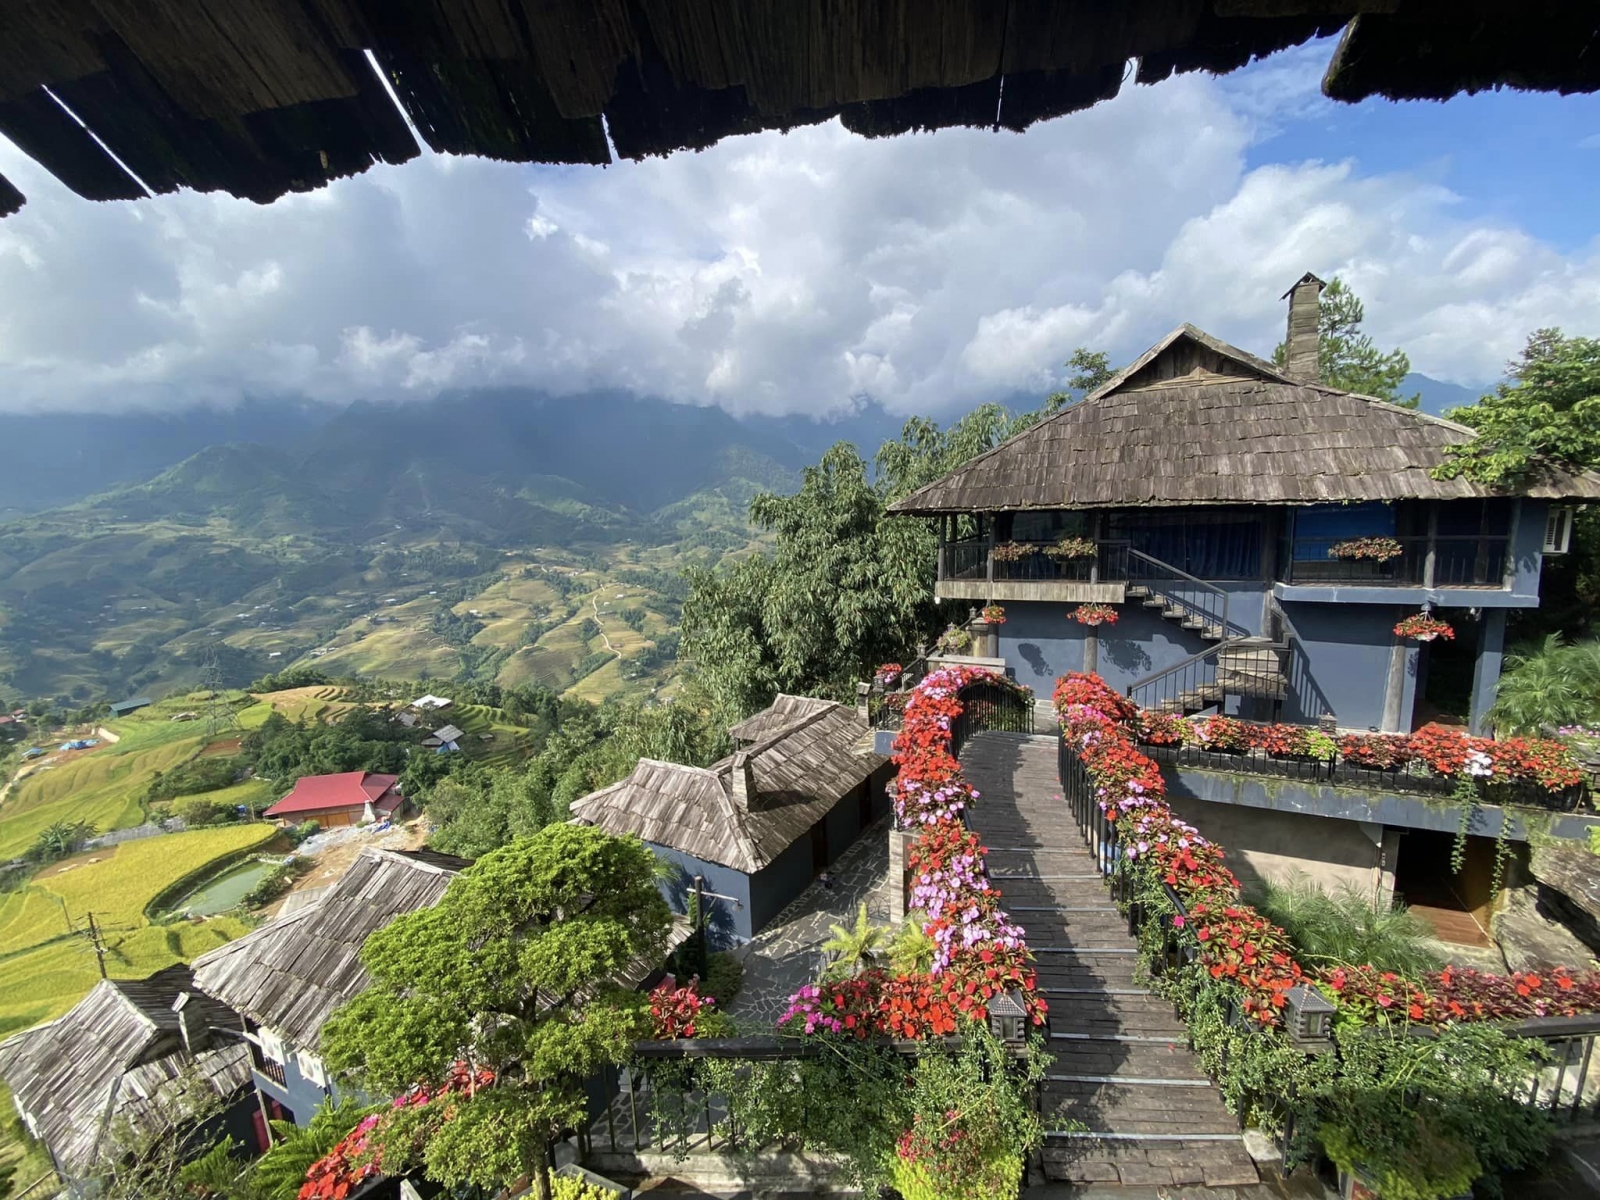 The Mong Village Resort Trải nghiệm văn hóa dân tộc H’mong lần đầu tiên tại Sapa